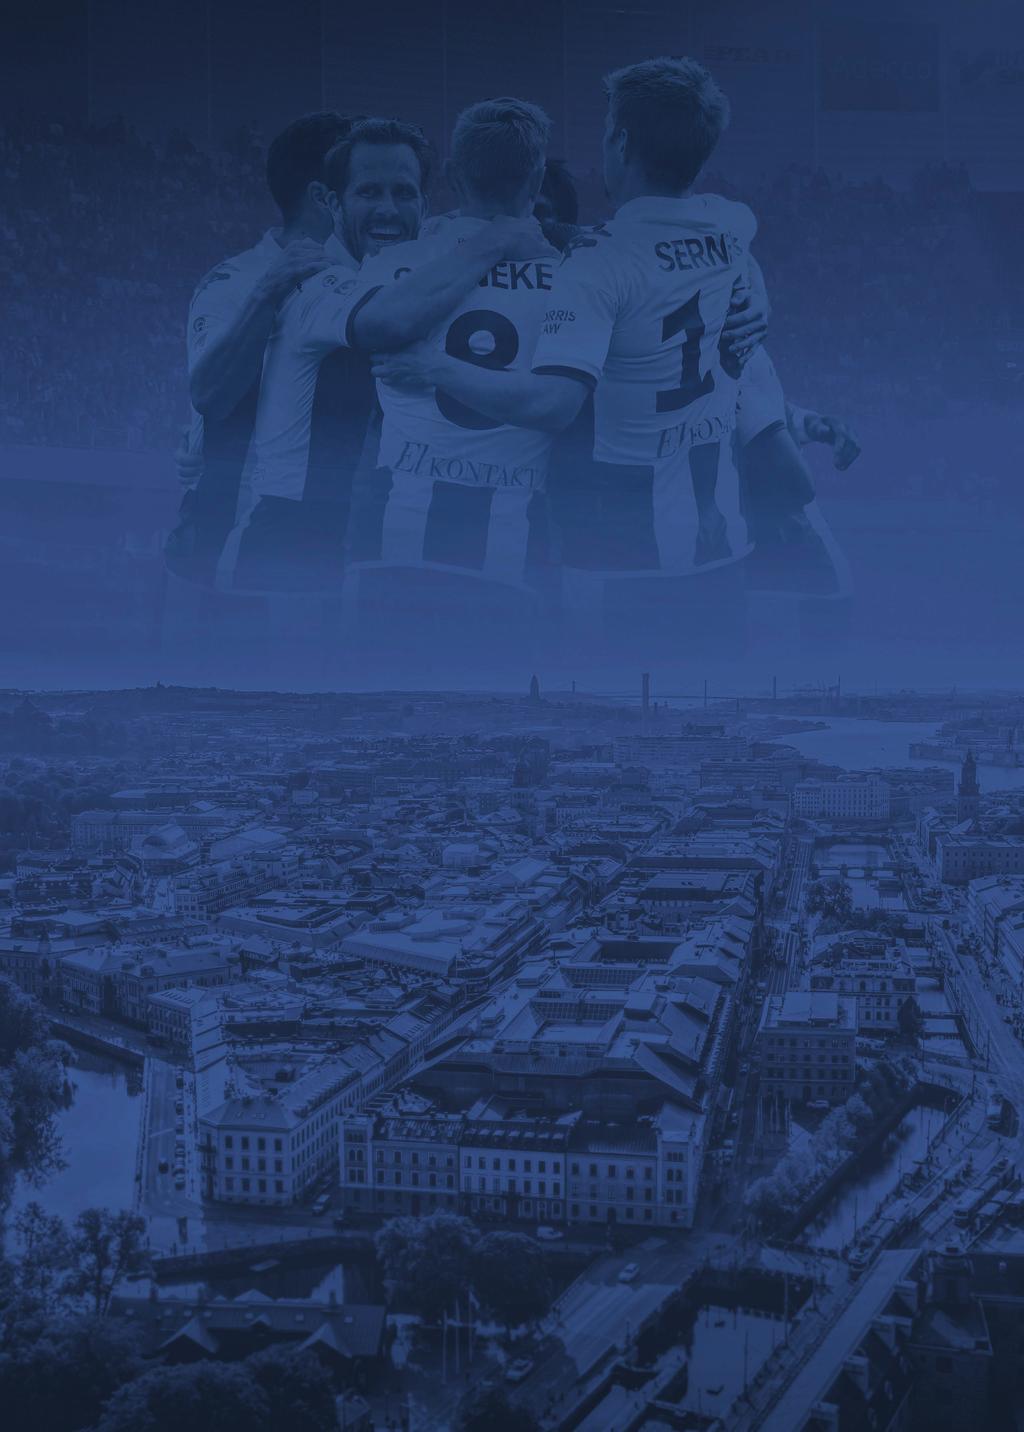 SKRIV PÅ FÖR IFK GÖTEBORG Fredrik Wallin Försäljningsansvarig Företag/partners 031-703 73 11 fredrik.wallin@ifkgoteborg.